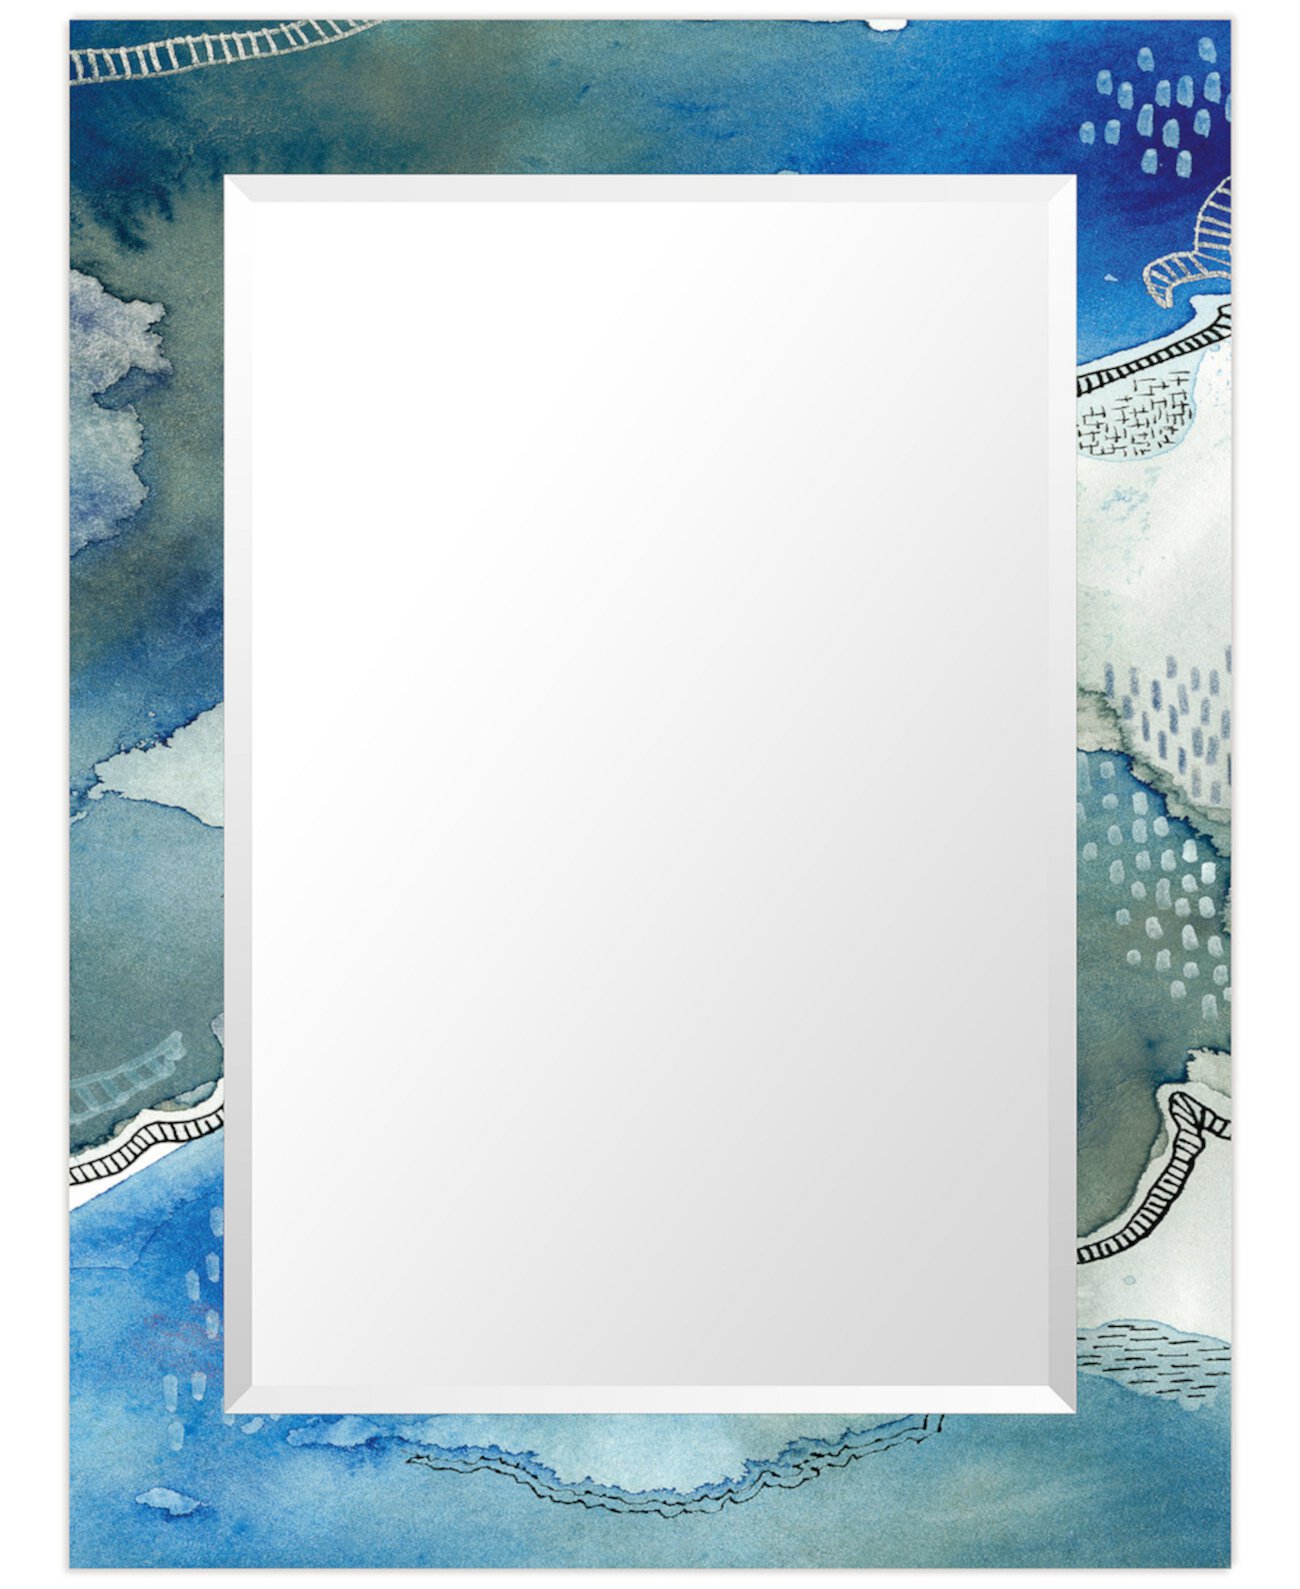 Прямоугольное зеркало Subtle Blues на свободно плавающем закаленном художественном стекле со скошенной кромкой, 40 x 30 дюймов Empire Art Direct